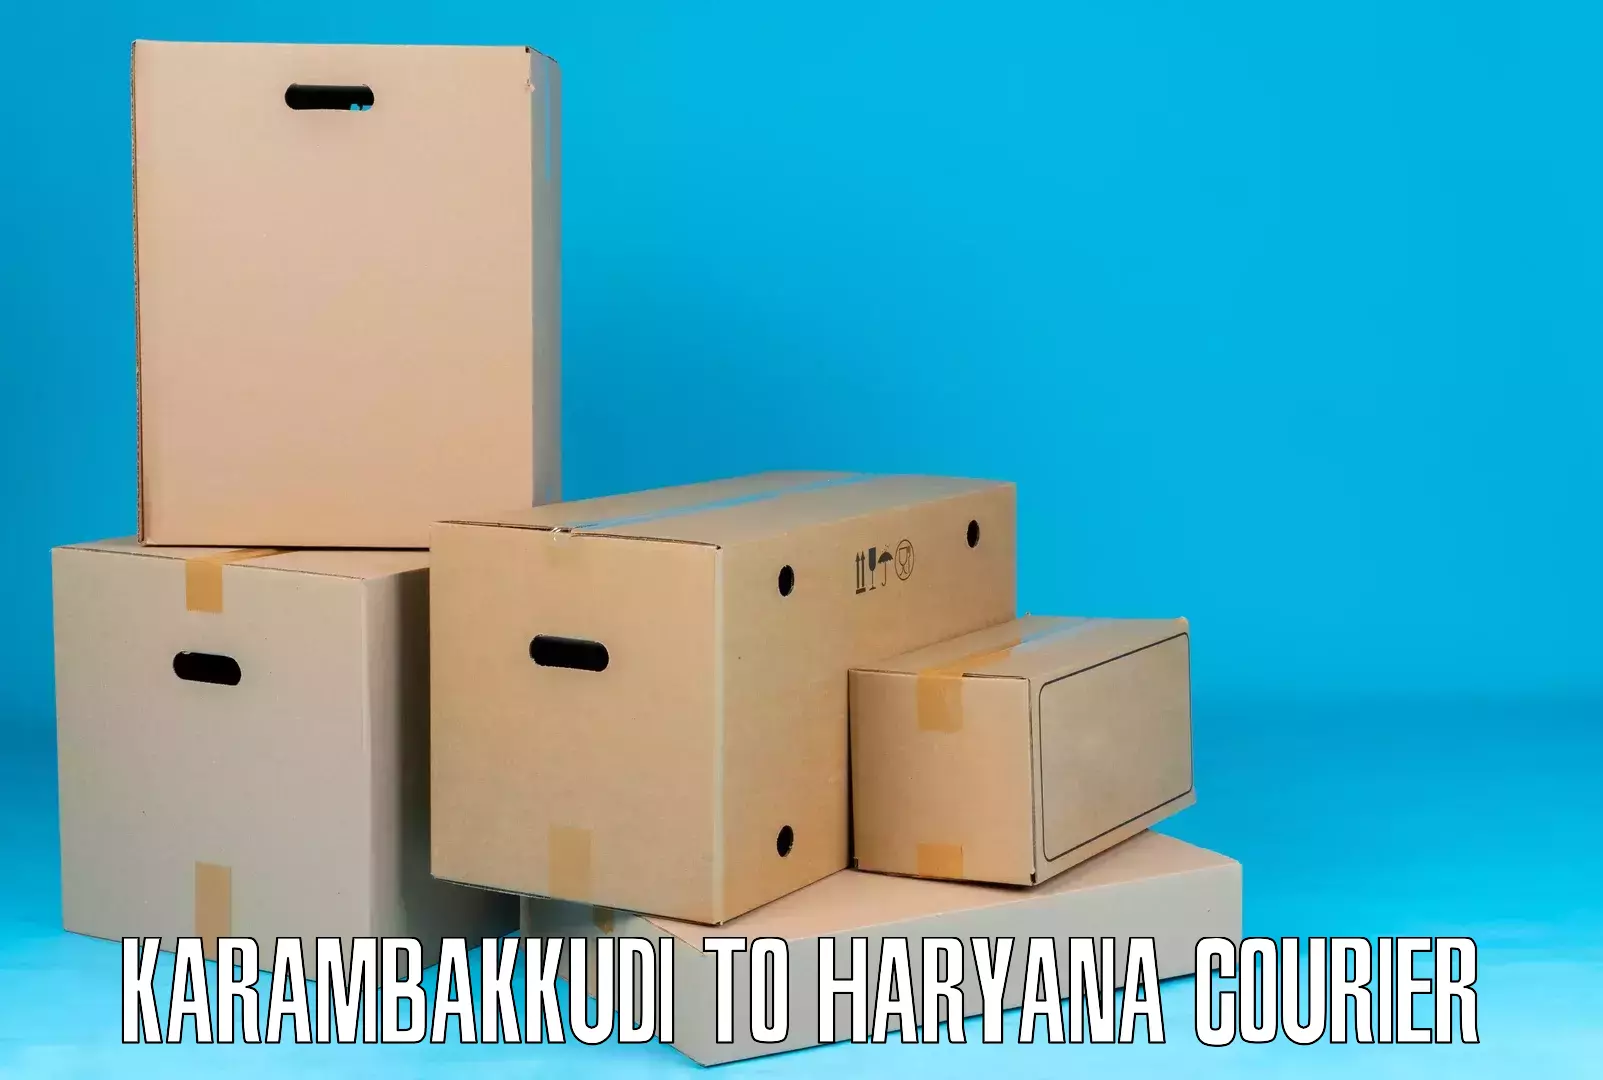 Budget-friendly shipping Karambakkudi to Ambala